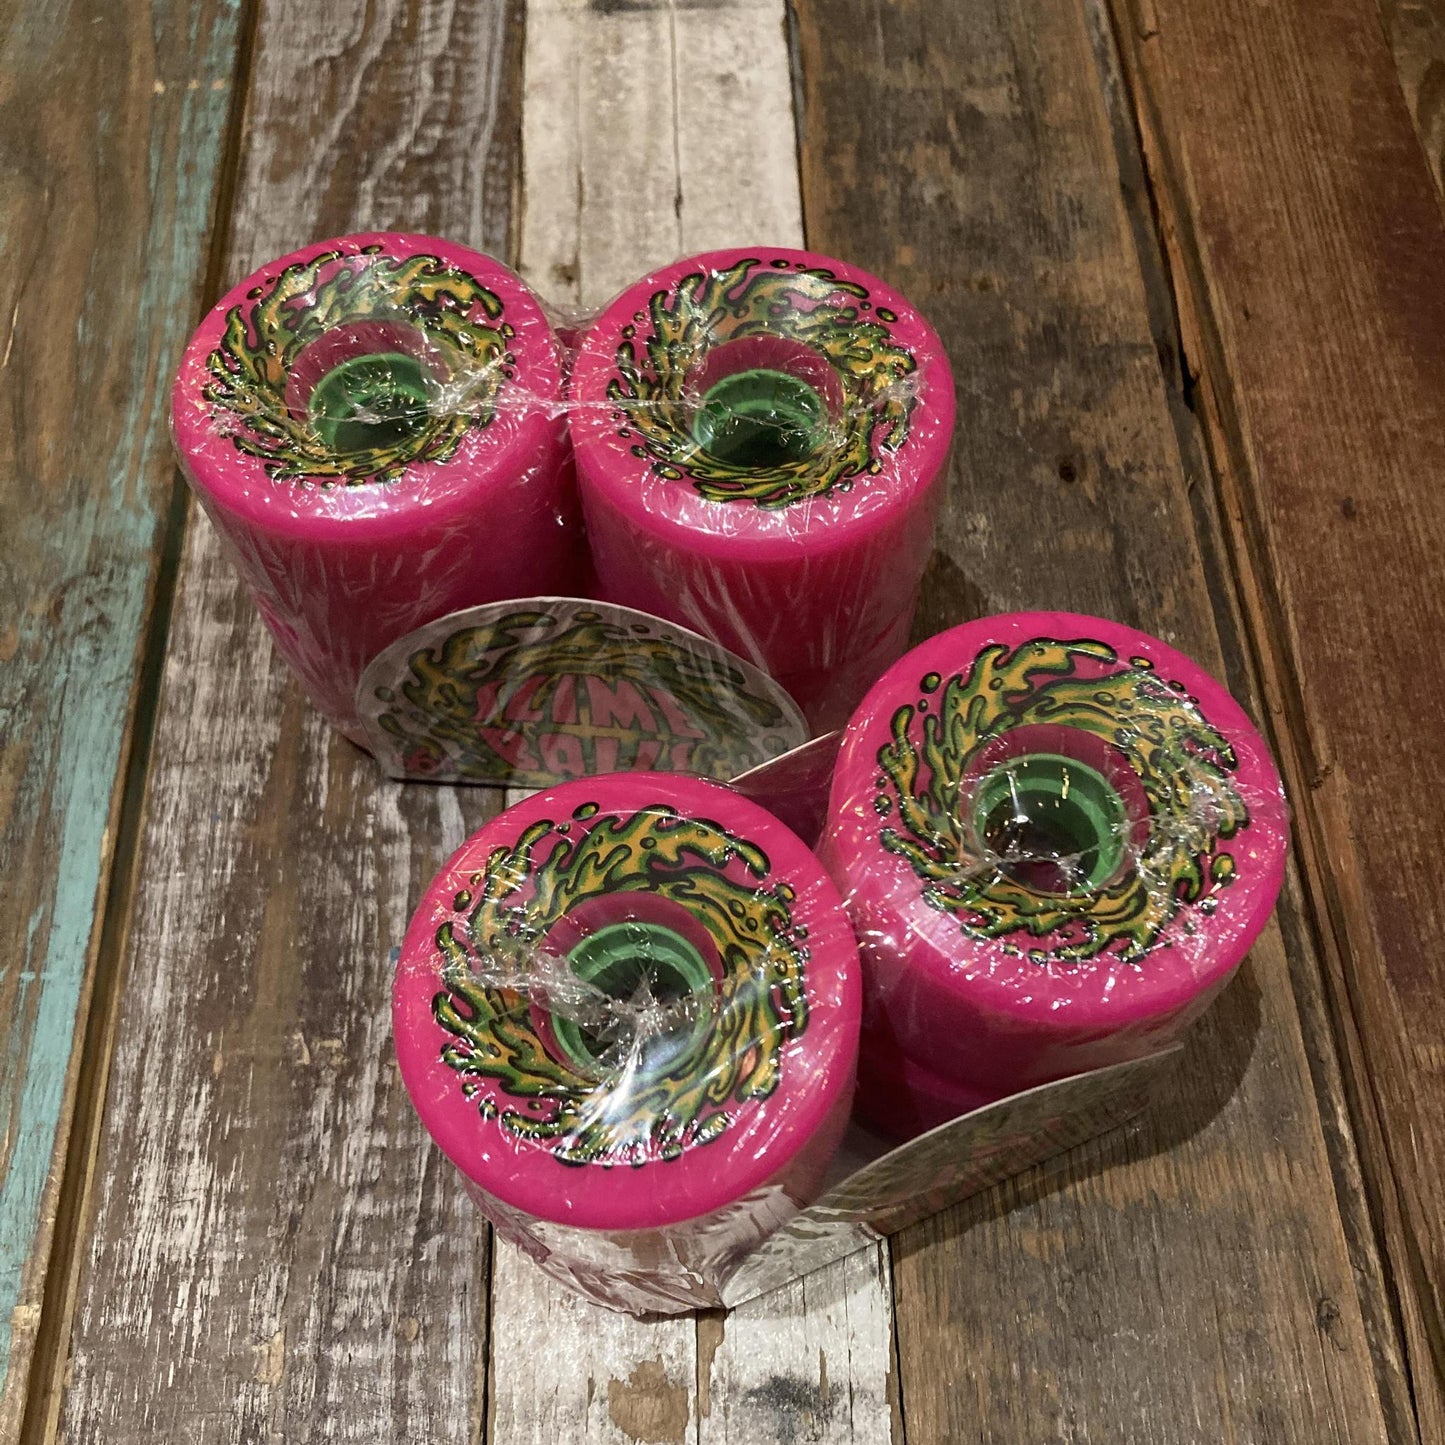 66mm OG Slime Pink 78a Slime Balls Wheels